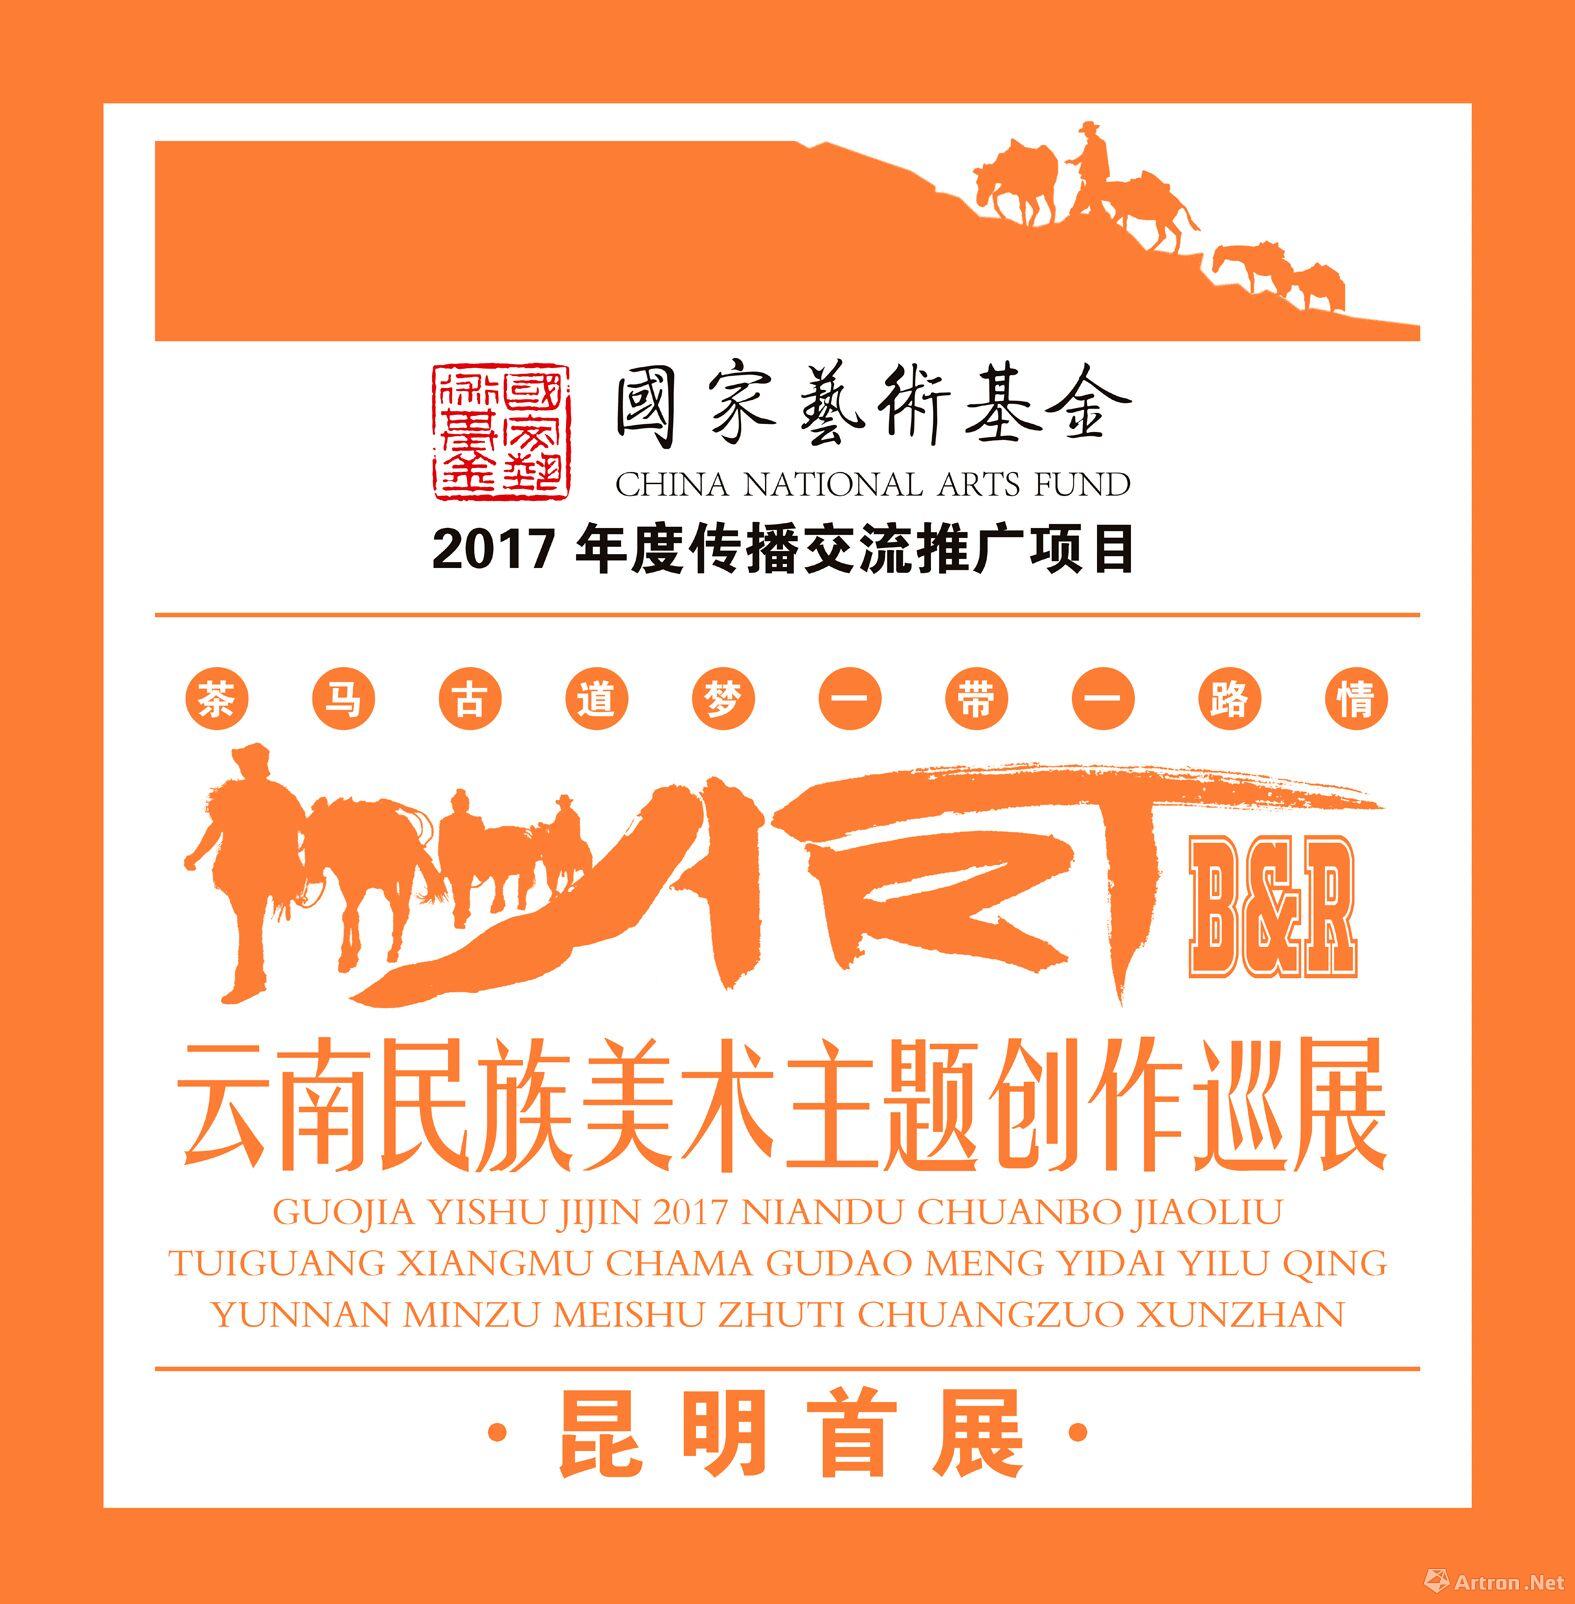 国家艺术基金2017年度传播交流推广项目“茶马古道梦·一带一路情”云南民族美术主题创作巡展